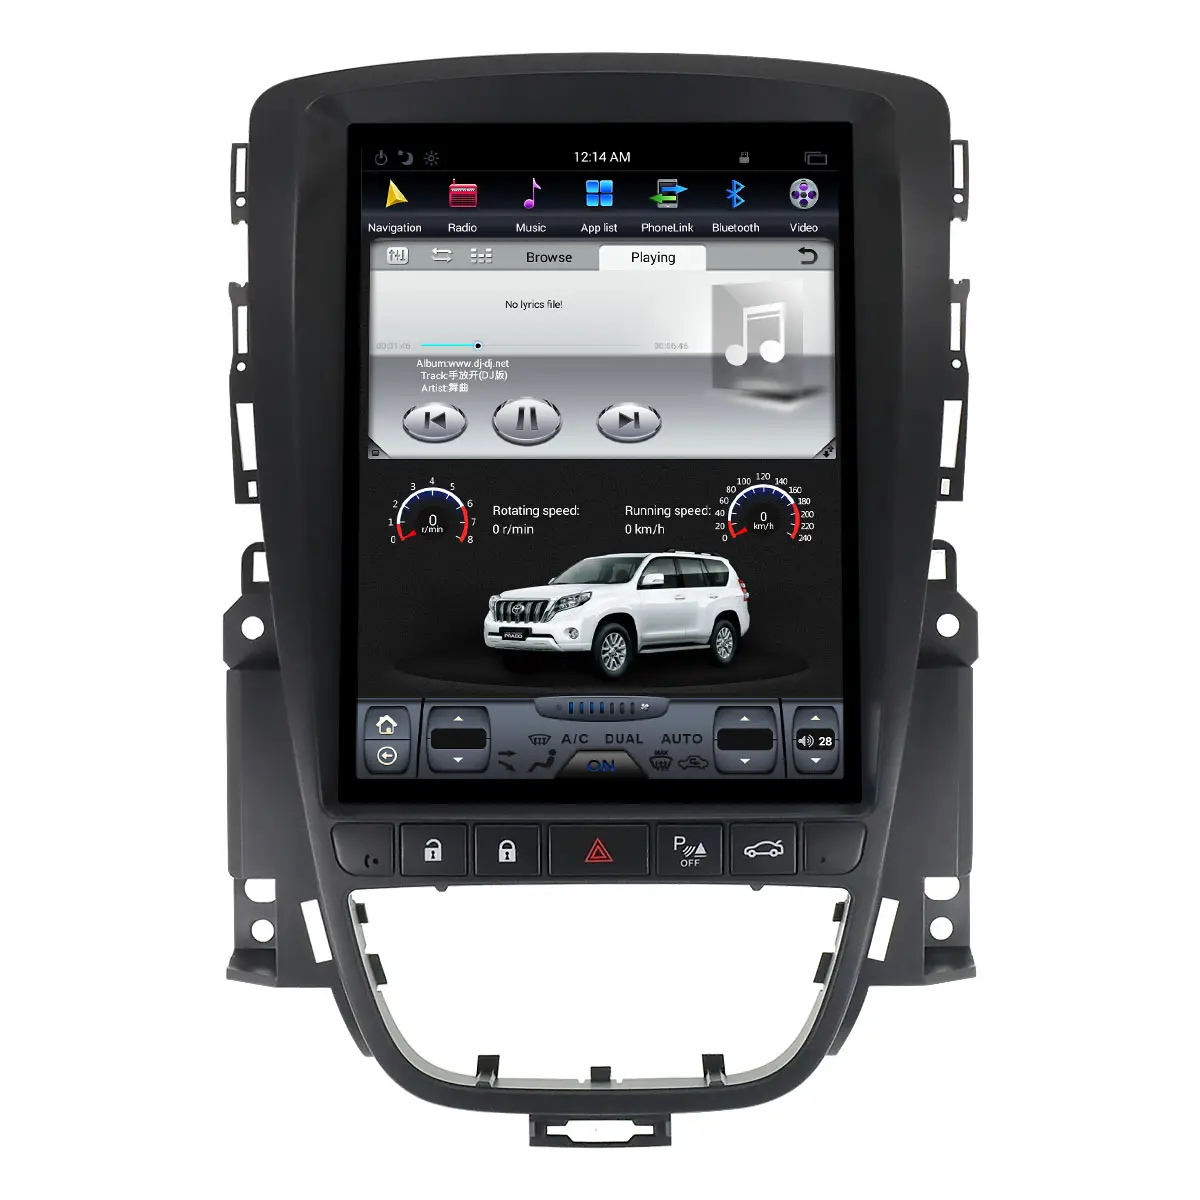 OPEL Astra J 2010 + 안드로이드 9.0 테슬라 스타일 자동차 GPS 네비게이션 헤드 유닛 No DVD 테이프 레코더 멀티미디어 플레이어 자동 스테레오